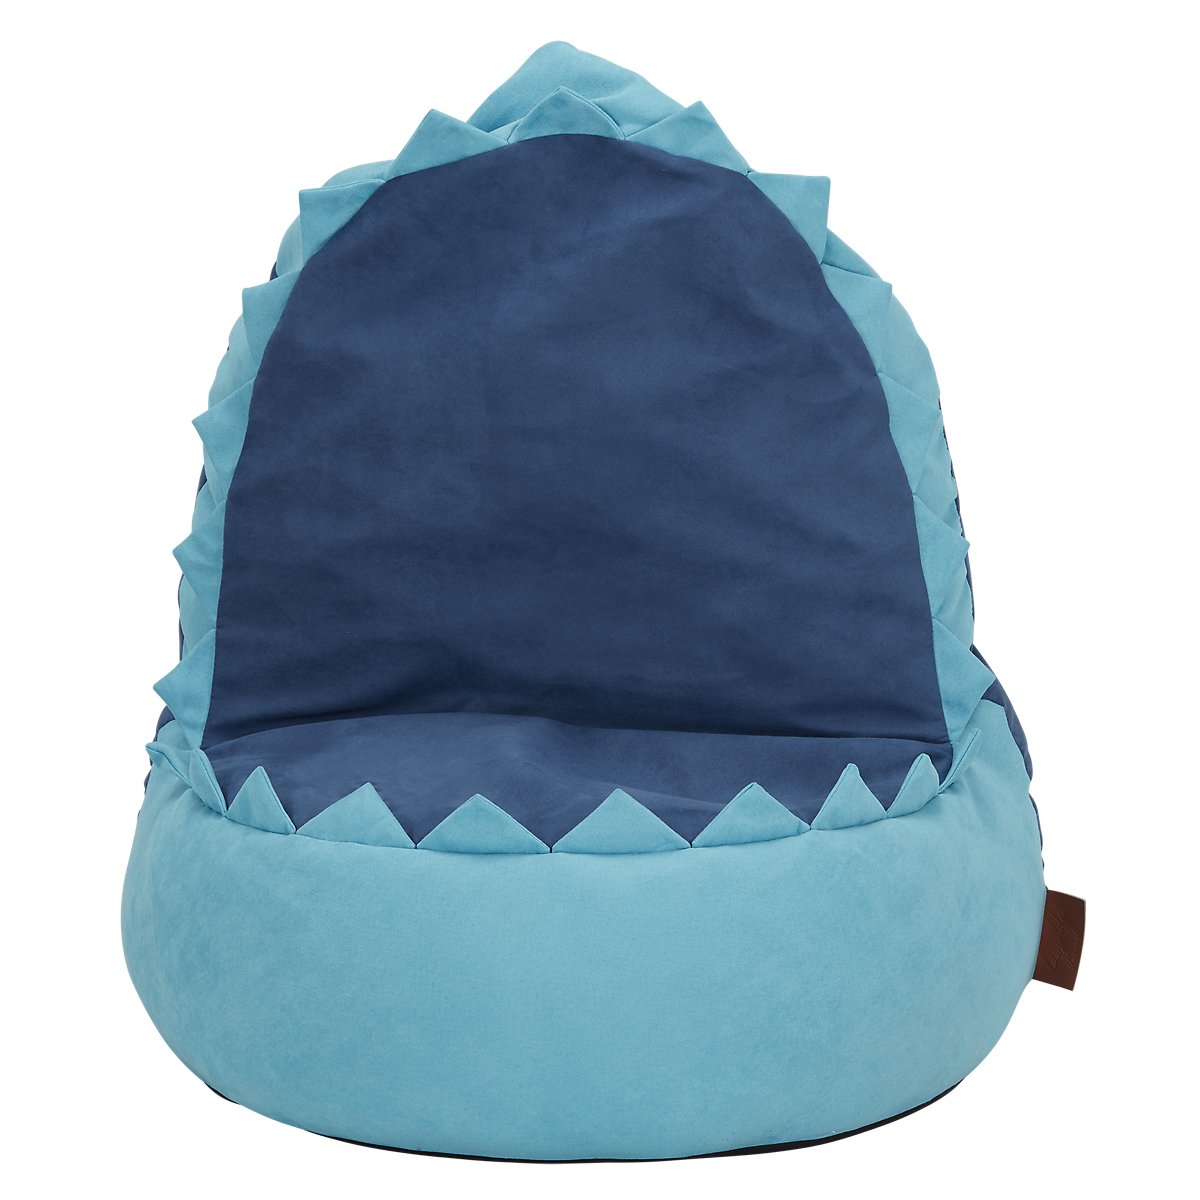 Shark Blue Bean Bag